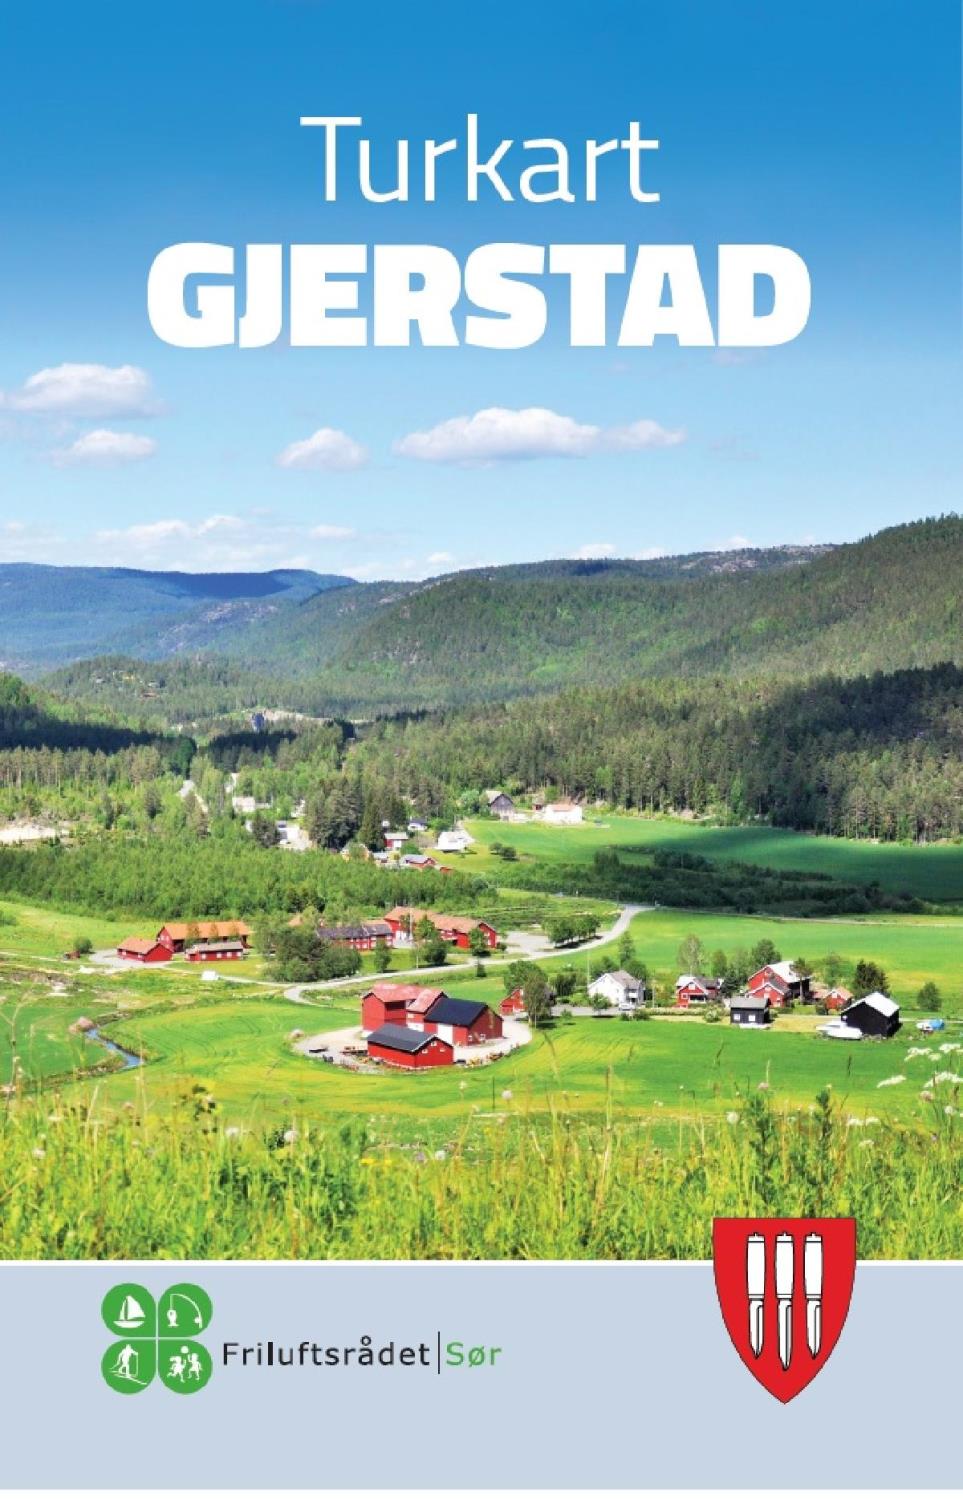 Turkart Gjerstad